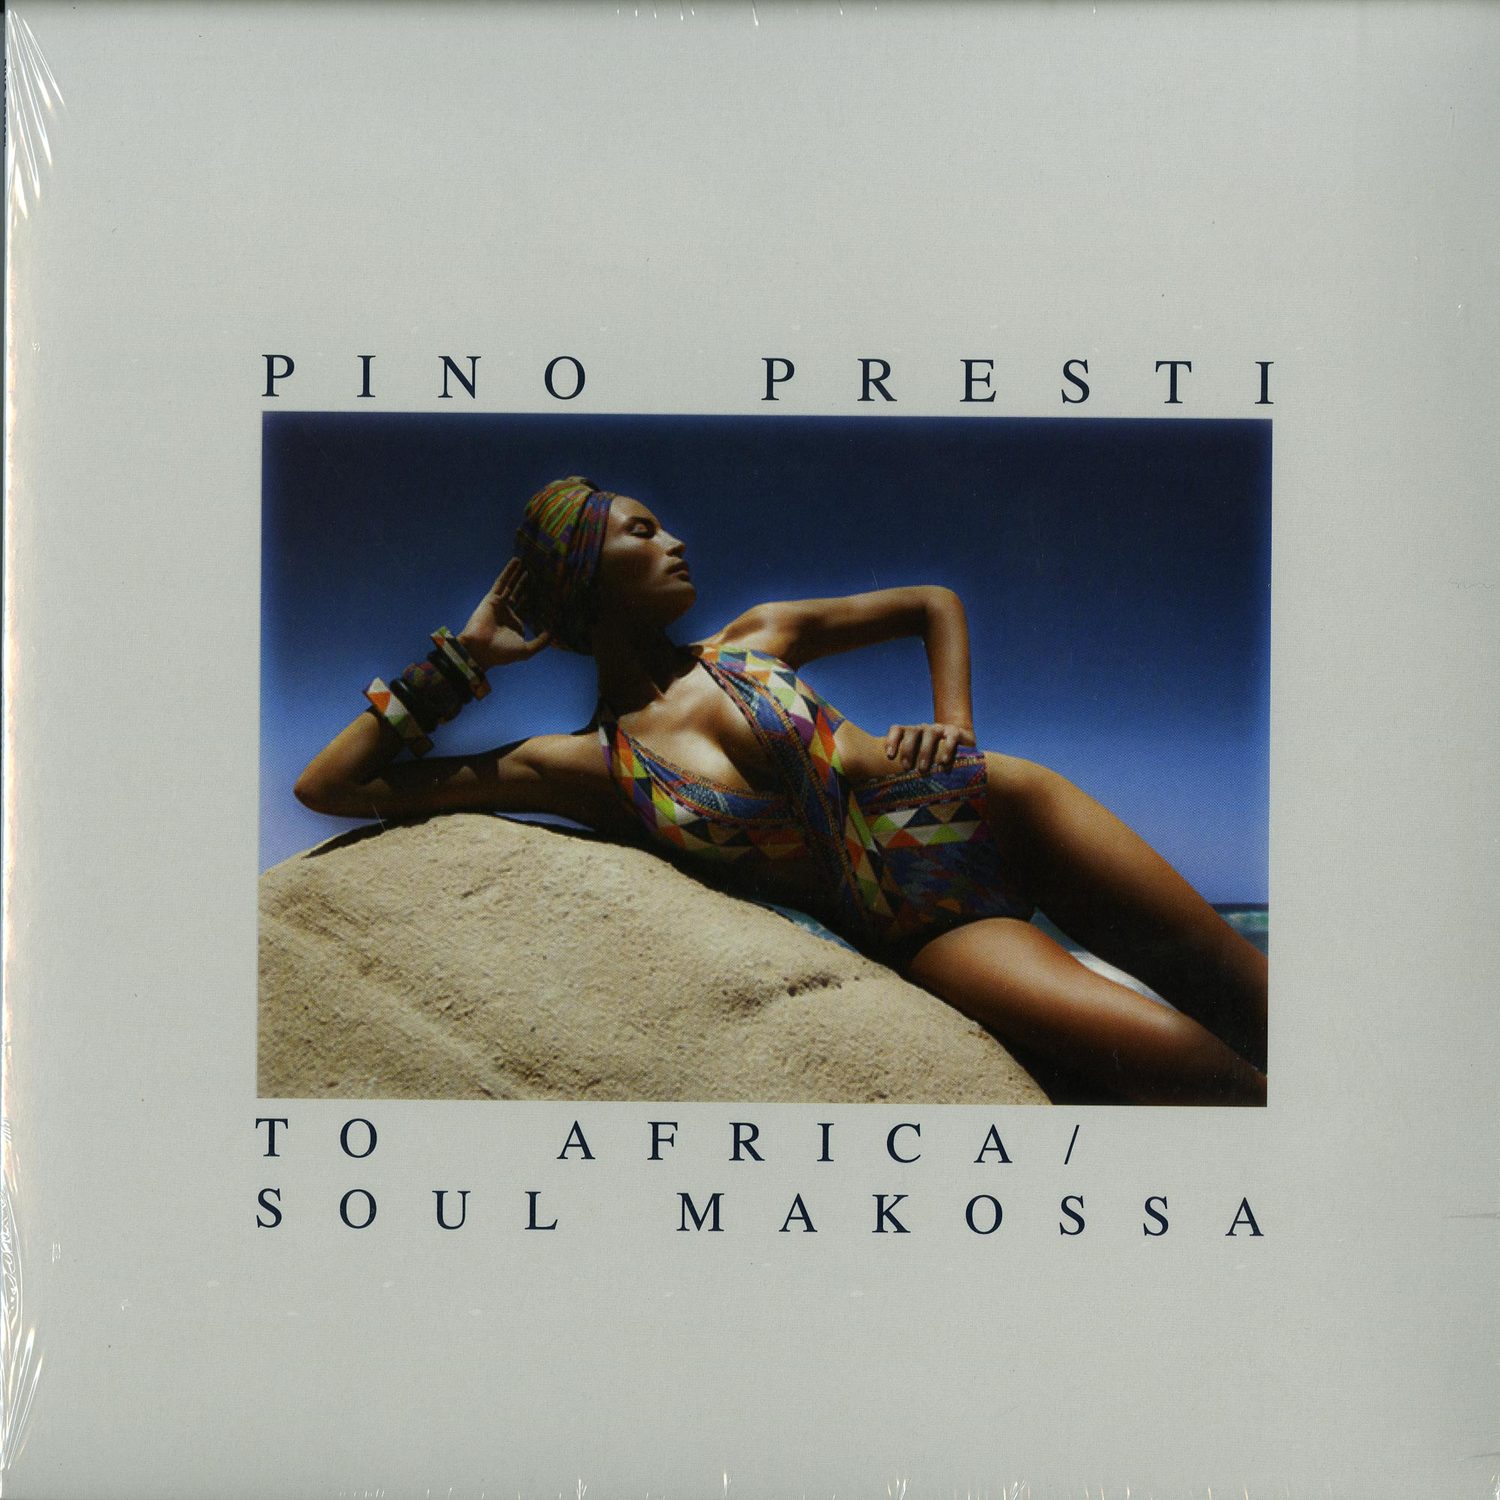 Pino Presti - TO AFRICA / SOUL MAKOSSA